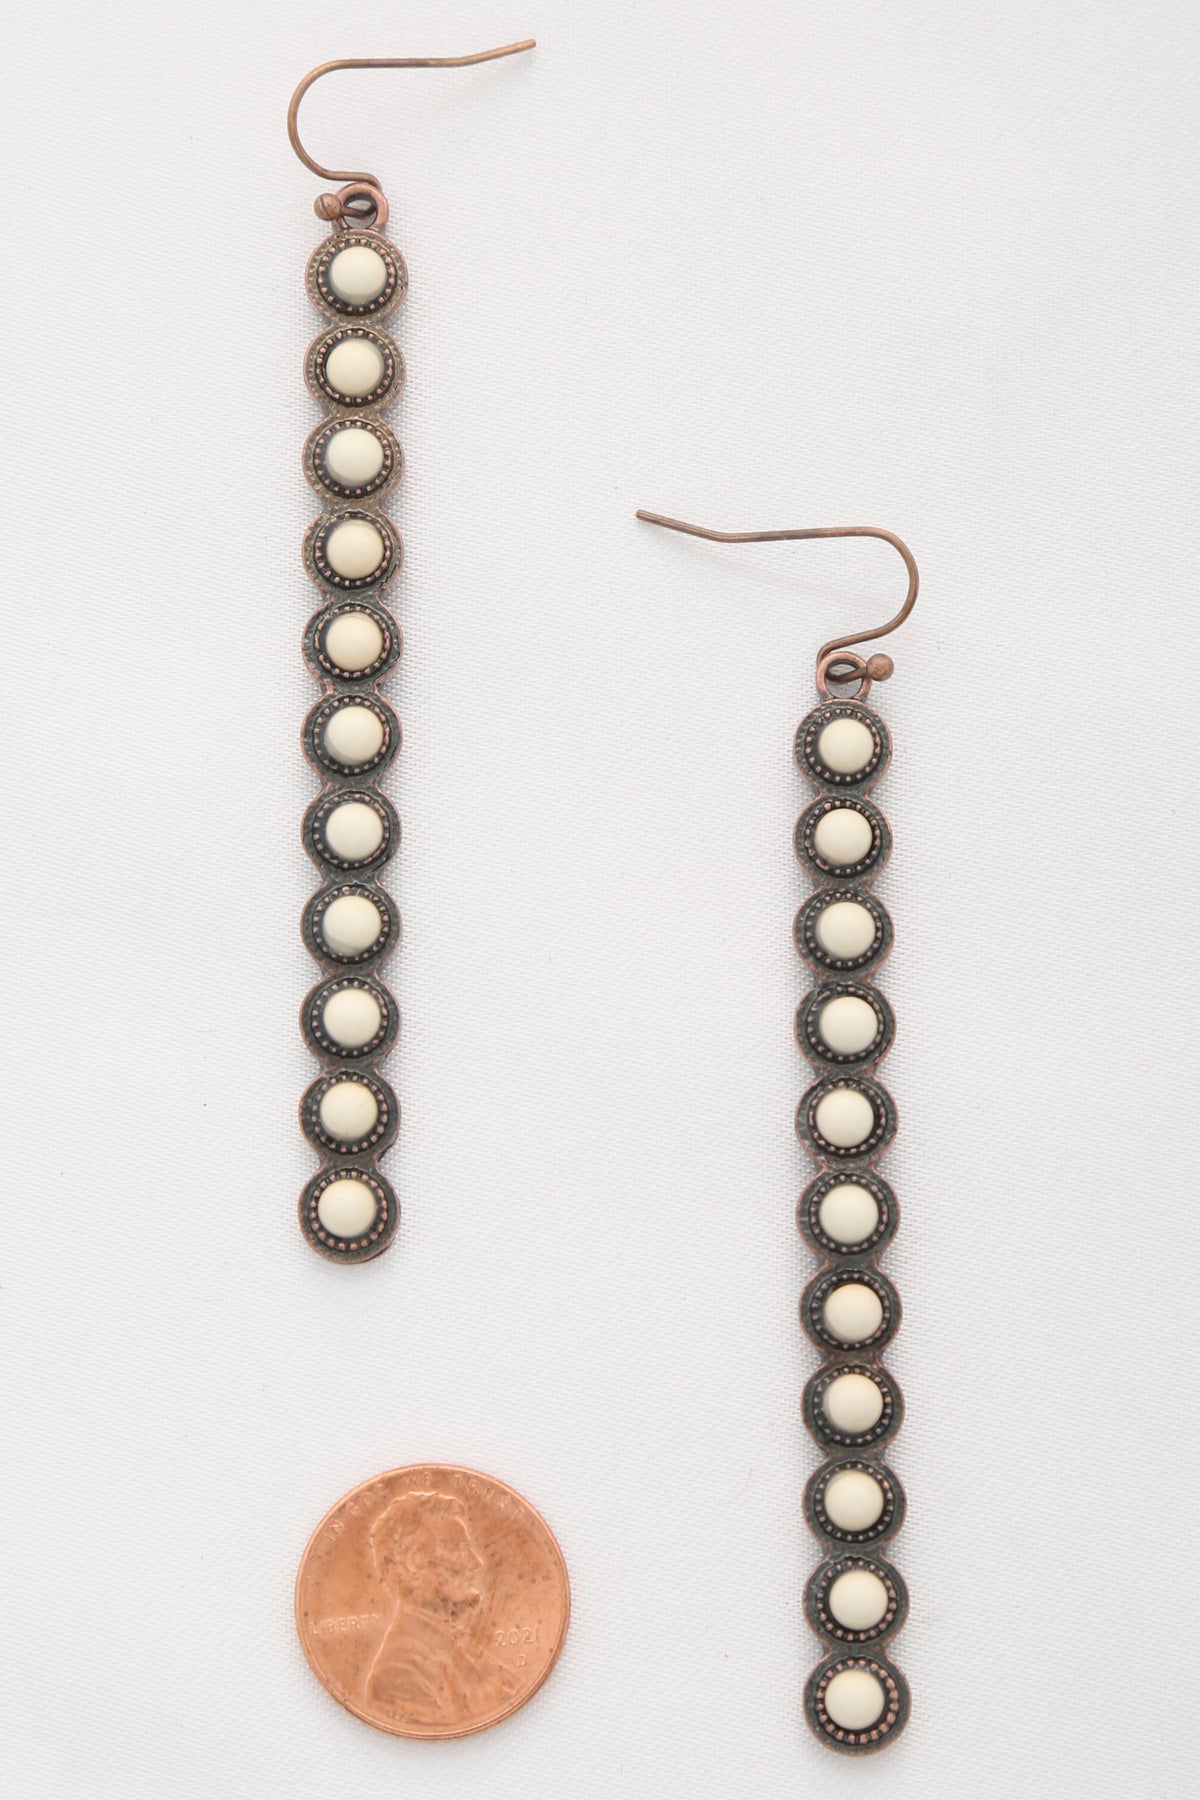 Rodeo Western Round Bead Pattern Metal Dangle Earring - Tigbul's Fashion